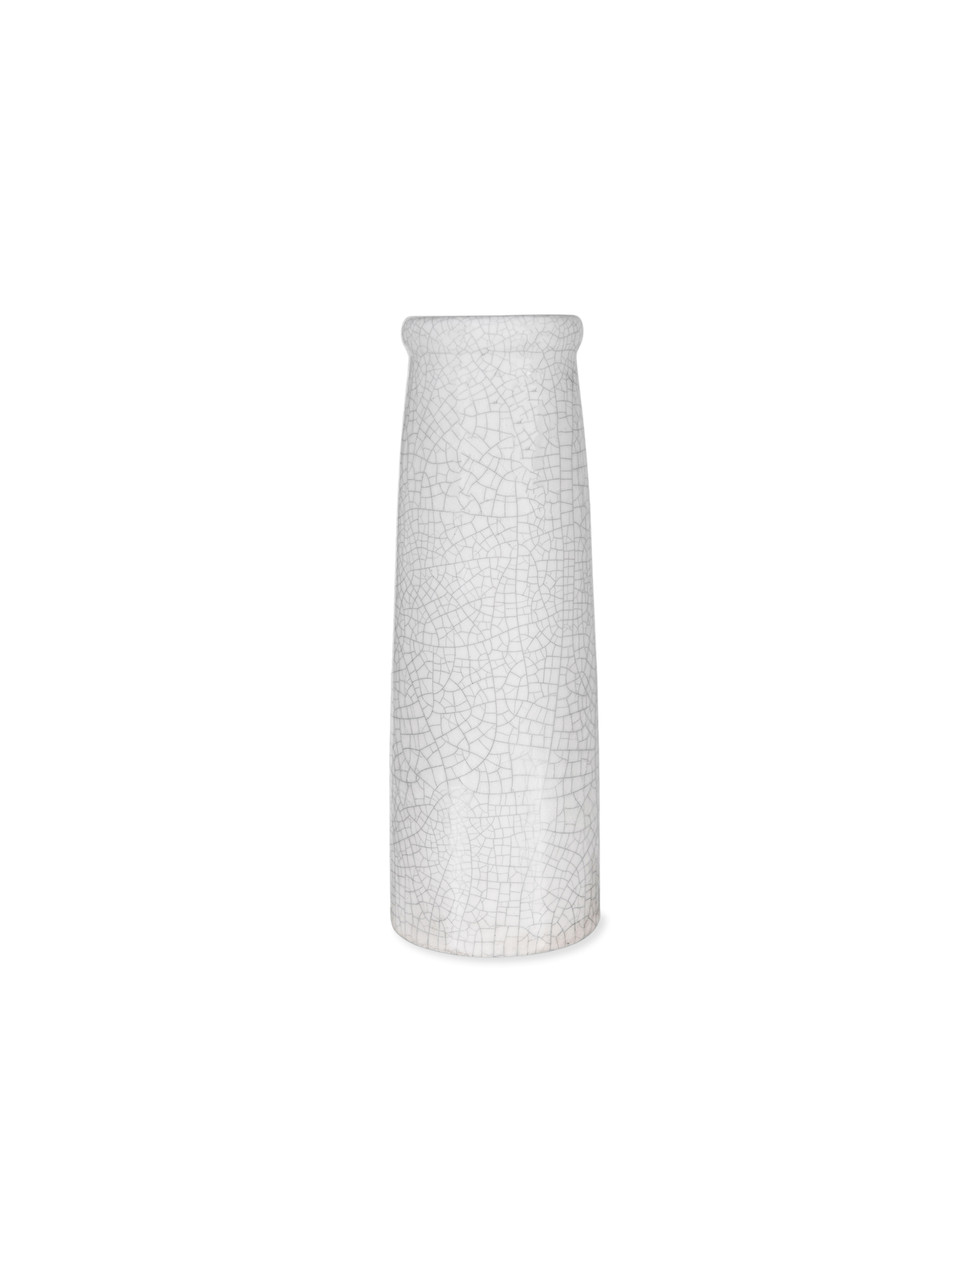 Garden Trading Off-White Ravello Bottle Vase